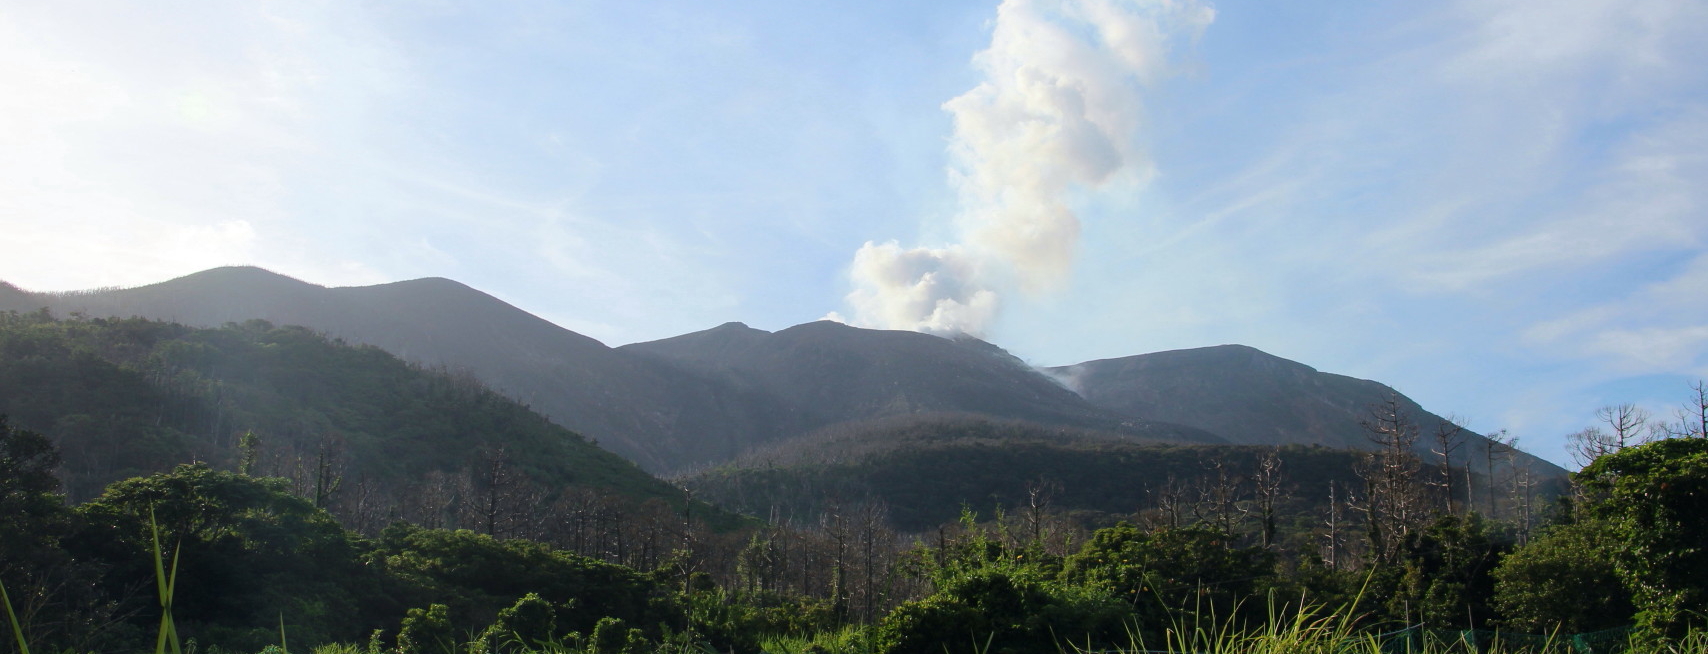 活火山の新岳は常に噴煙を上げています